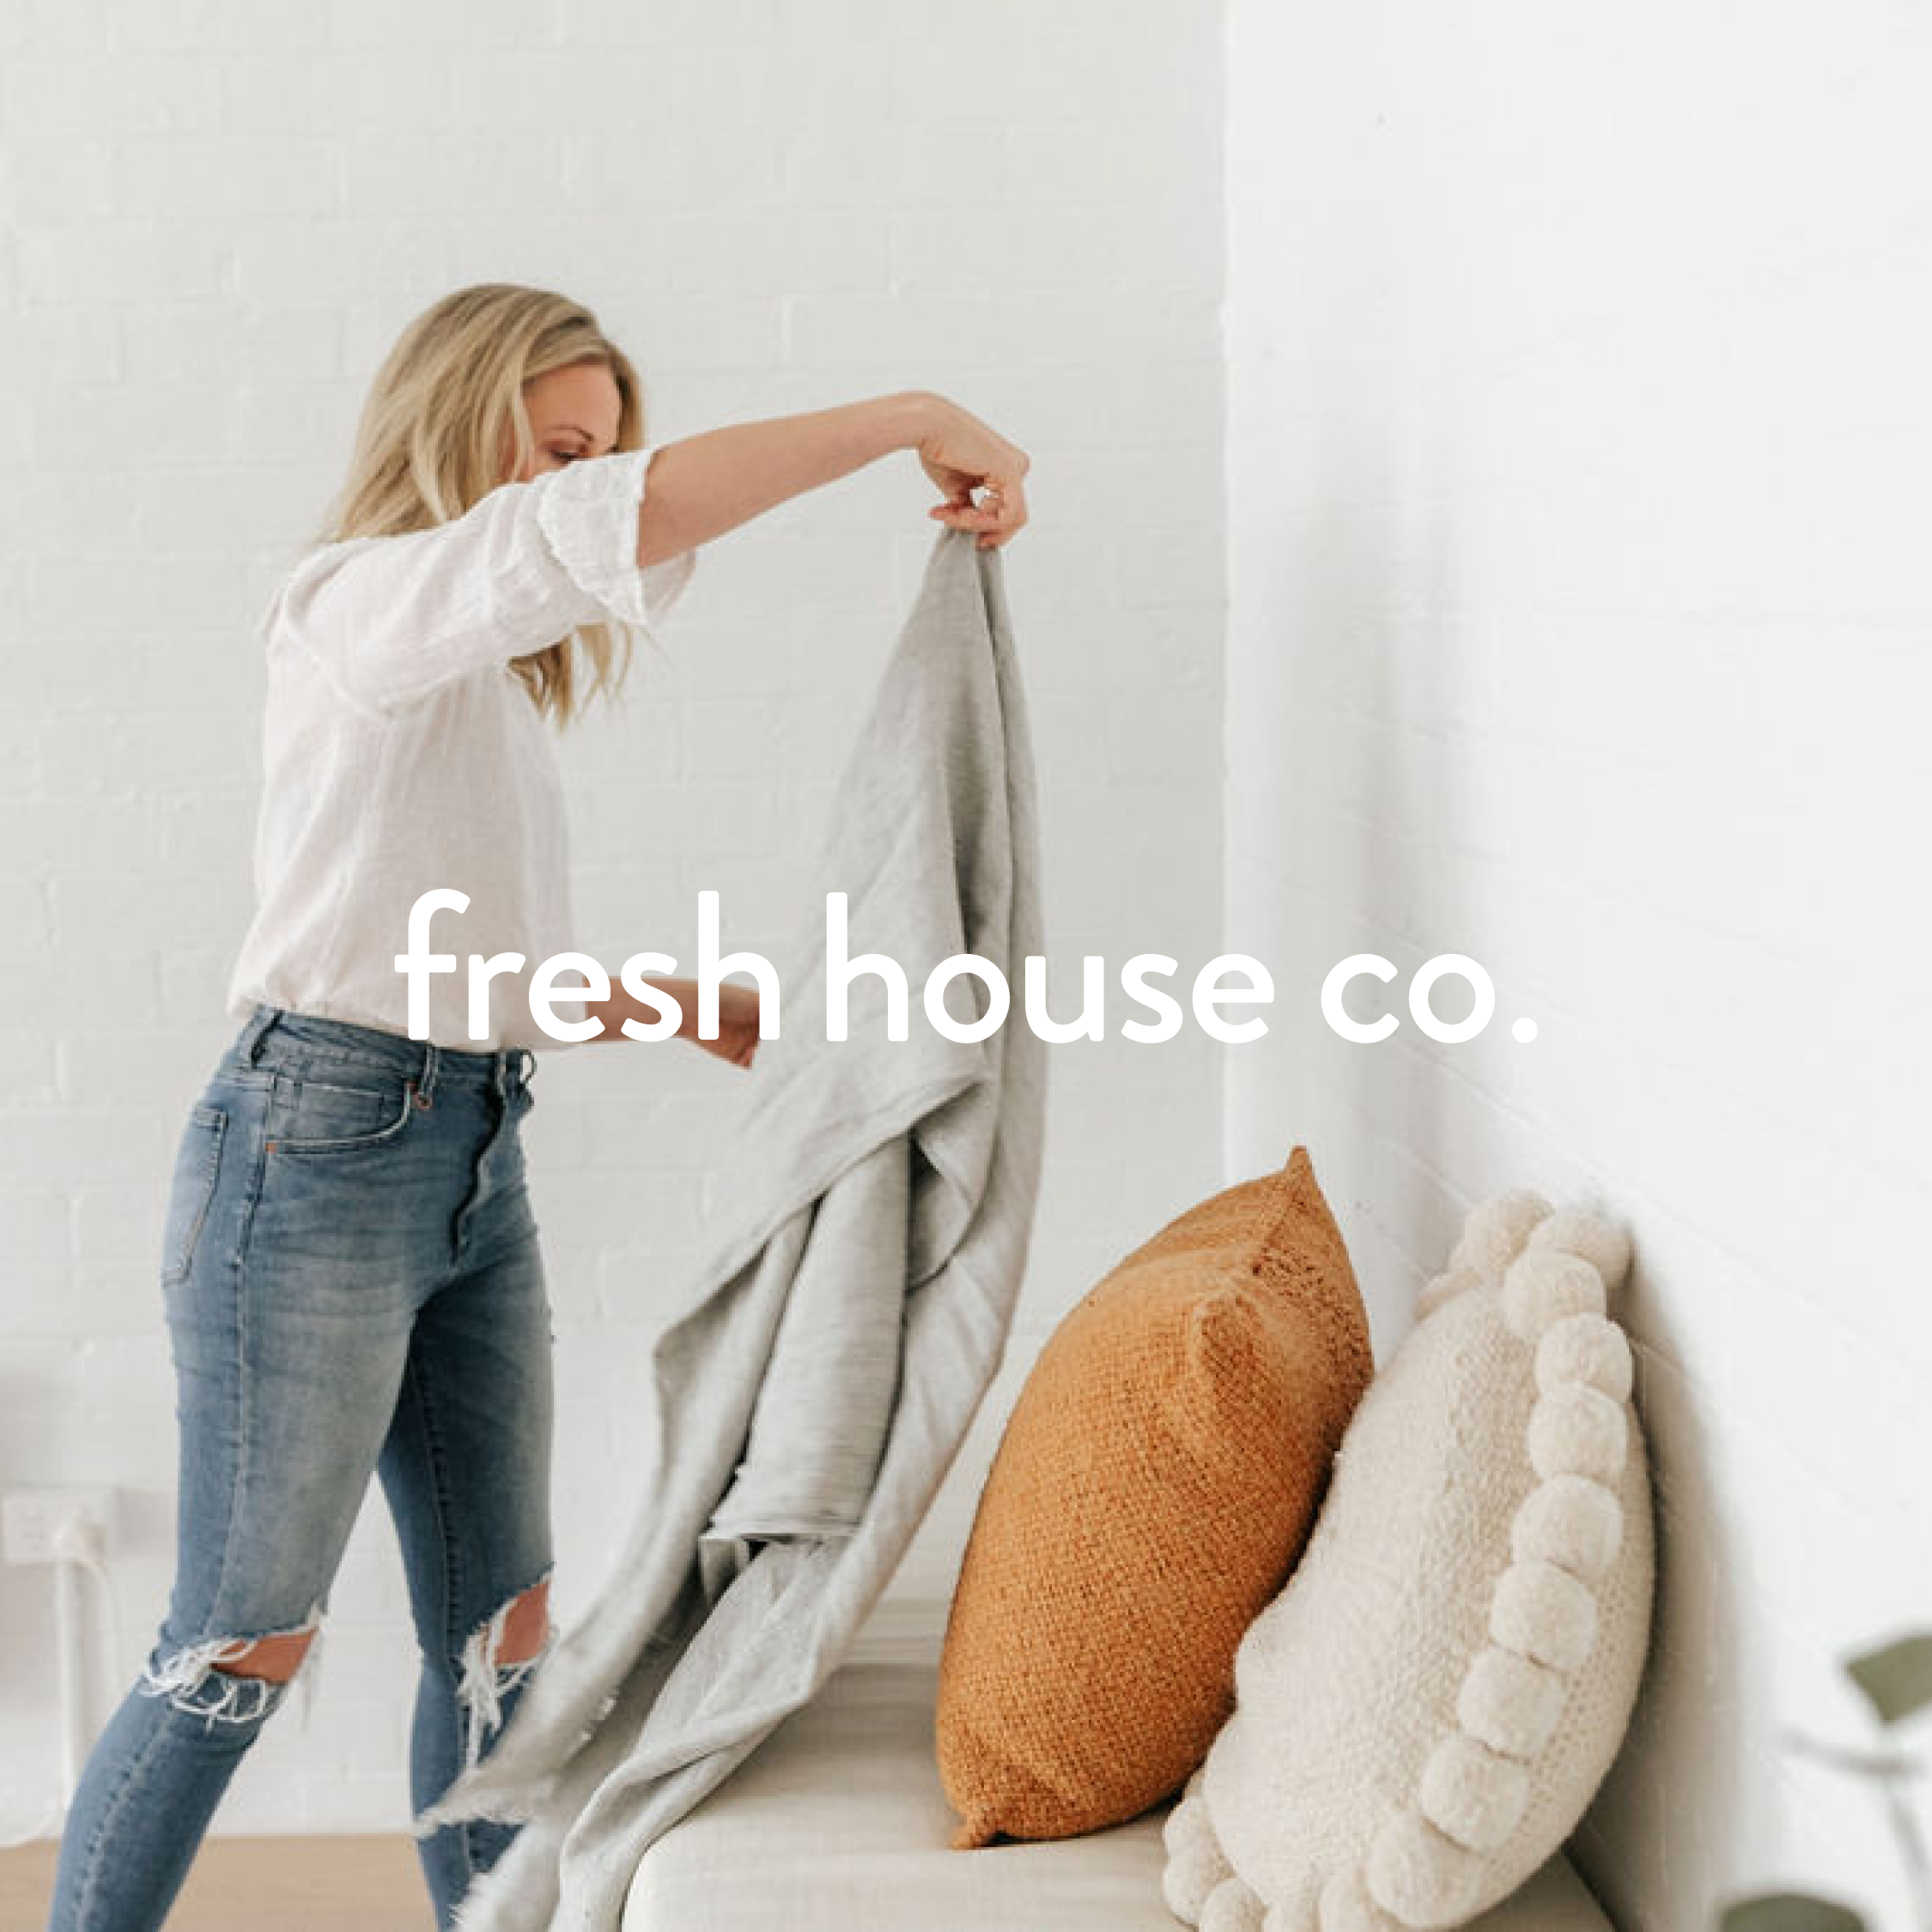 fresh house co branding